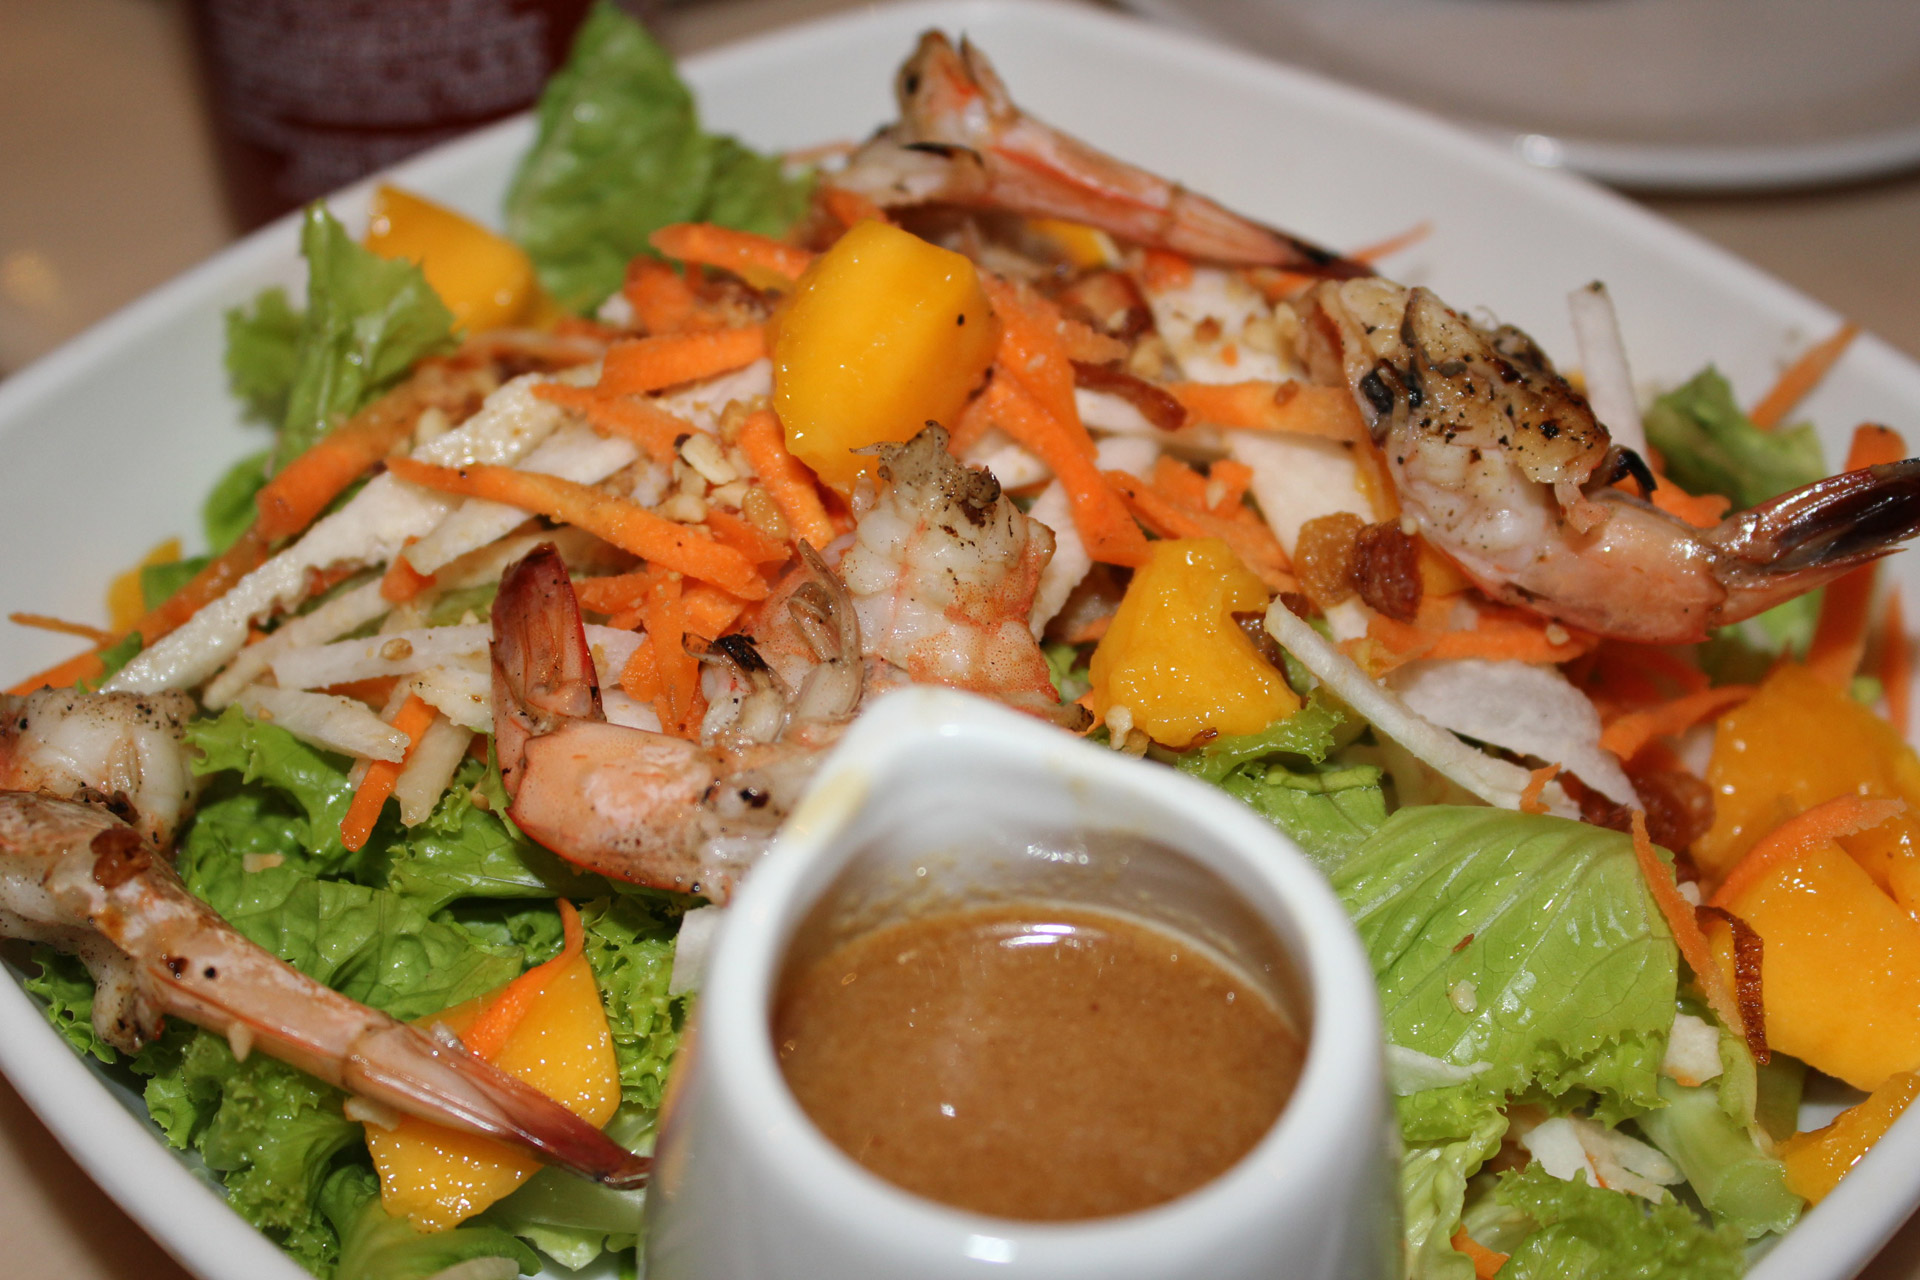 Old Bay Shrimp Salad